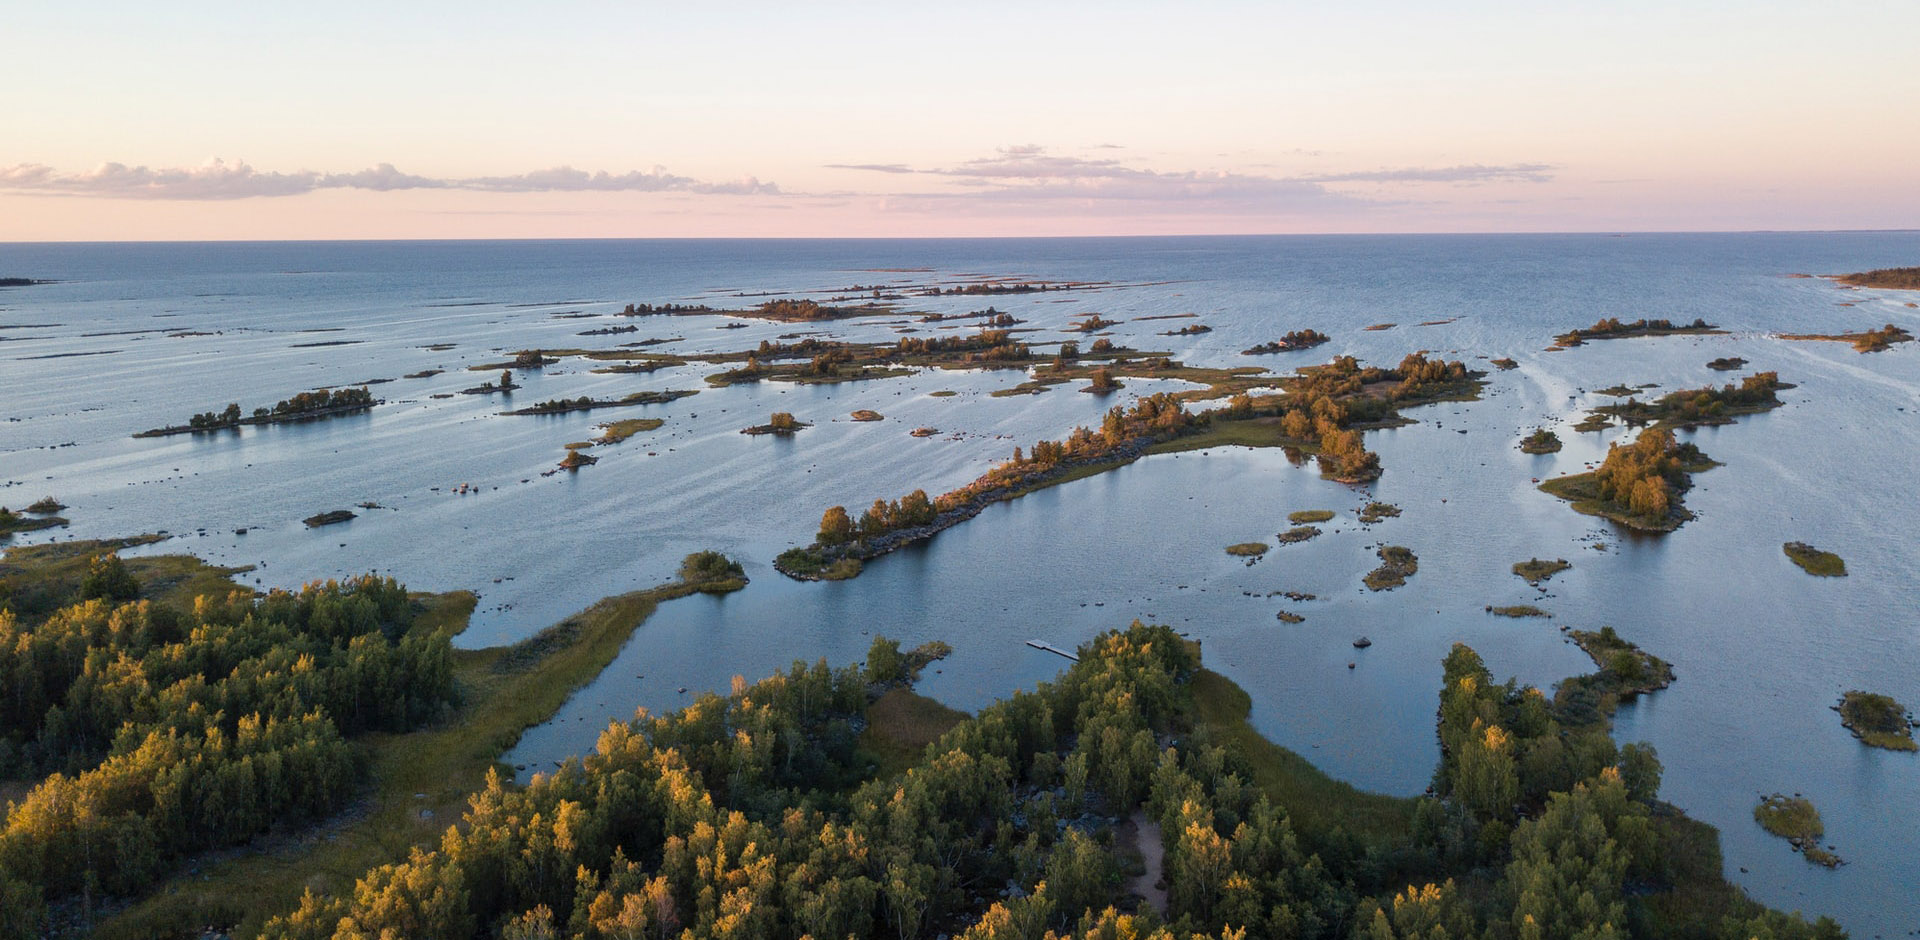 Kvarken Północny - cieśnina w środkowej częsci Zatoki Botnickiej. Od 200 roku wpisana na listę Światowego Dziedzictwa Kulturowego i Przyrodniczego Ludzkości organizacji UNESCO.